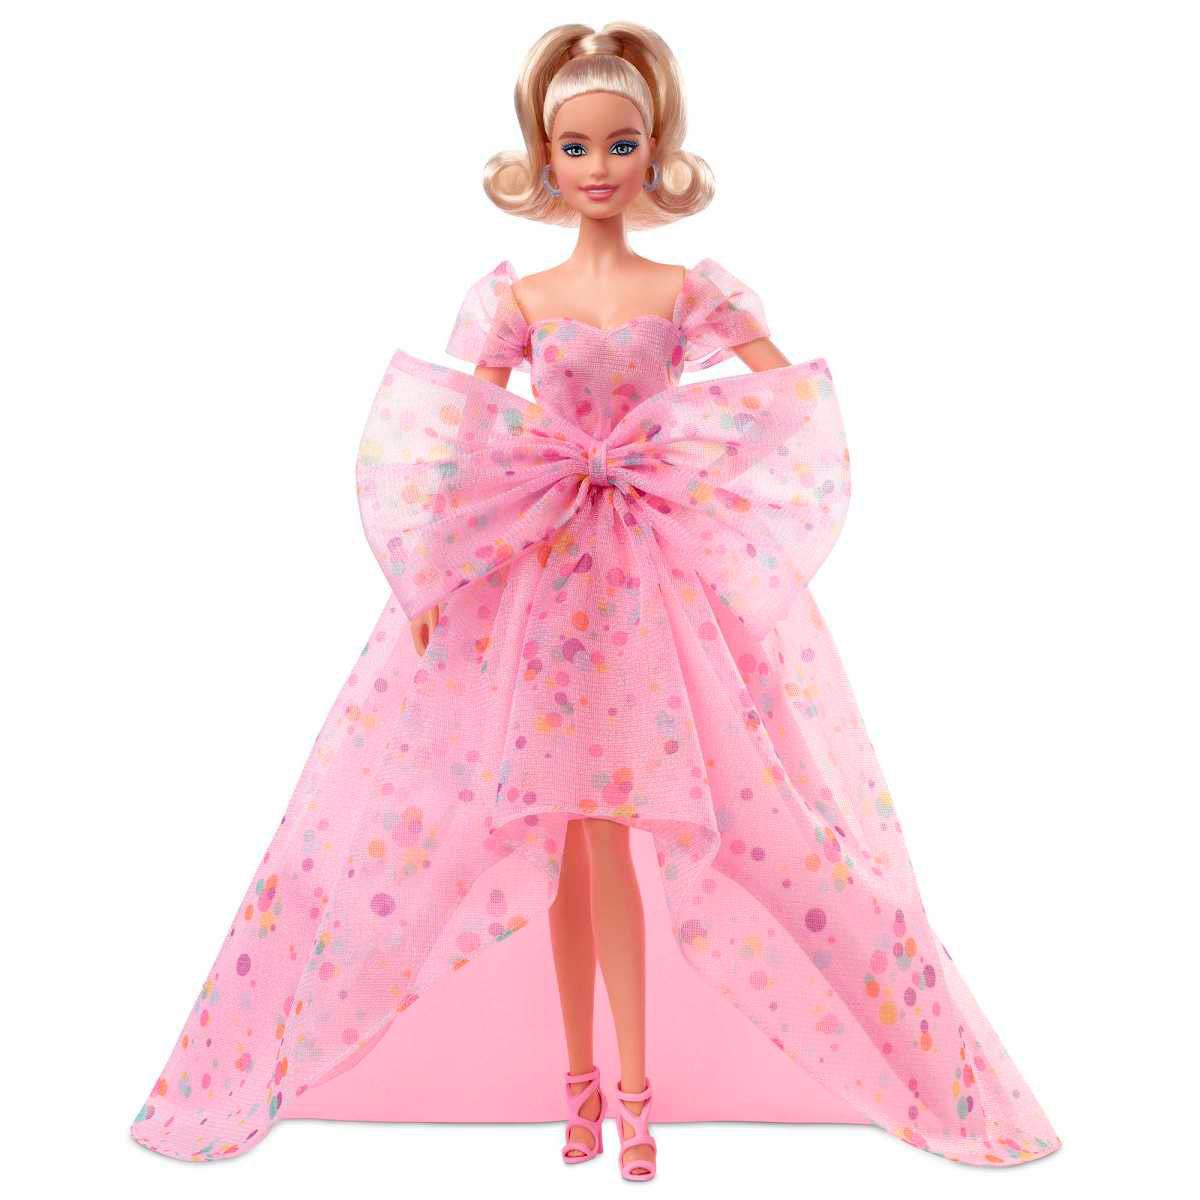 941 en la categoría «Birthday barbie» de imágenes, fotos de stock